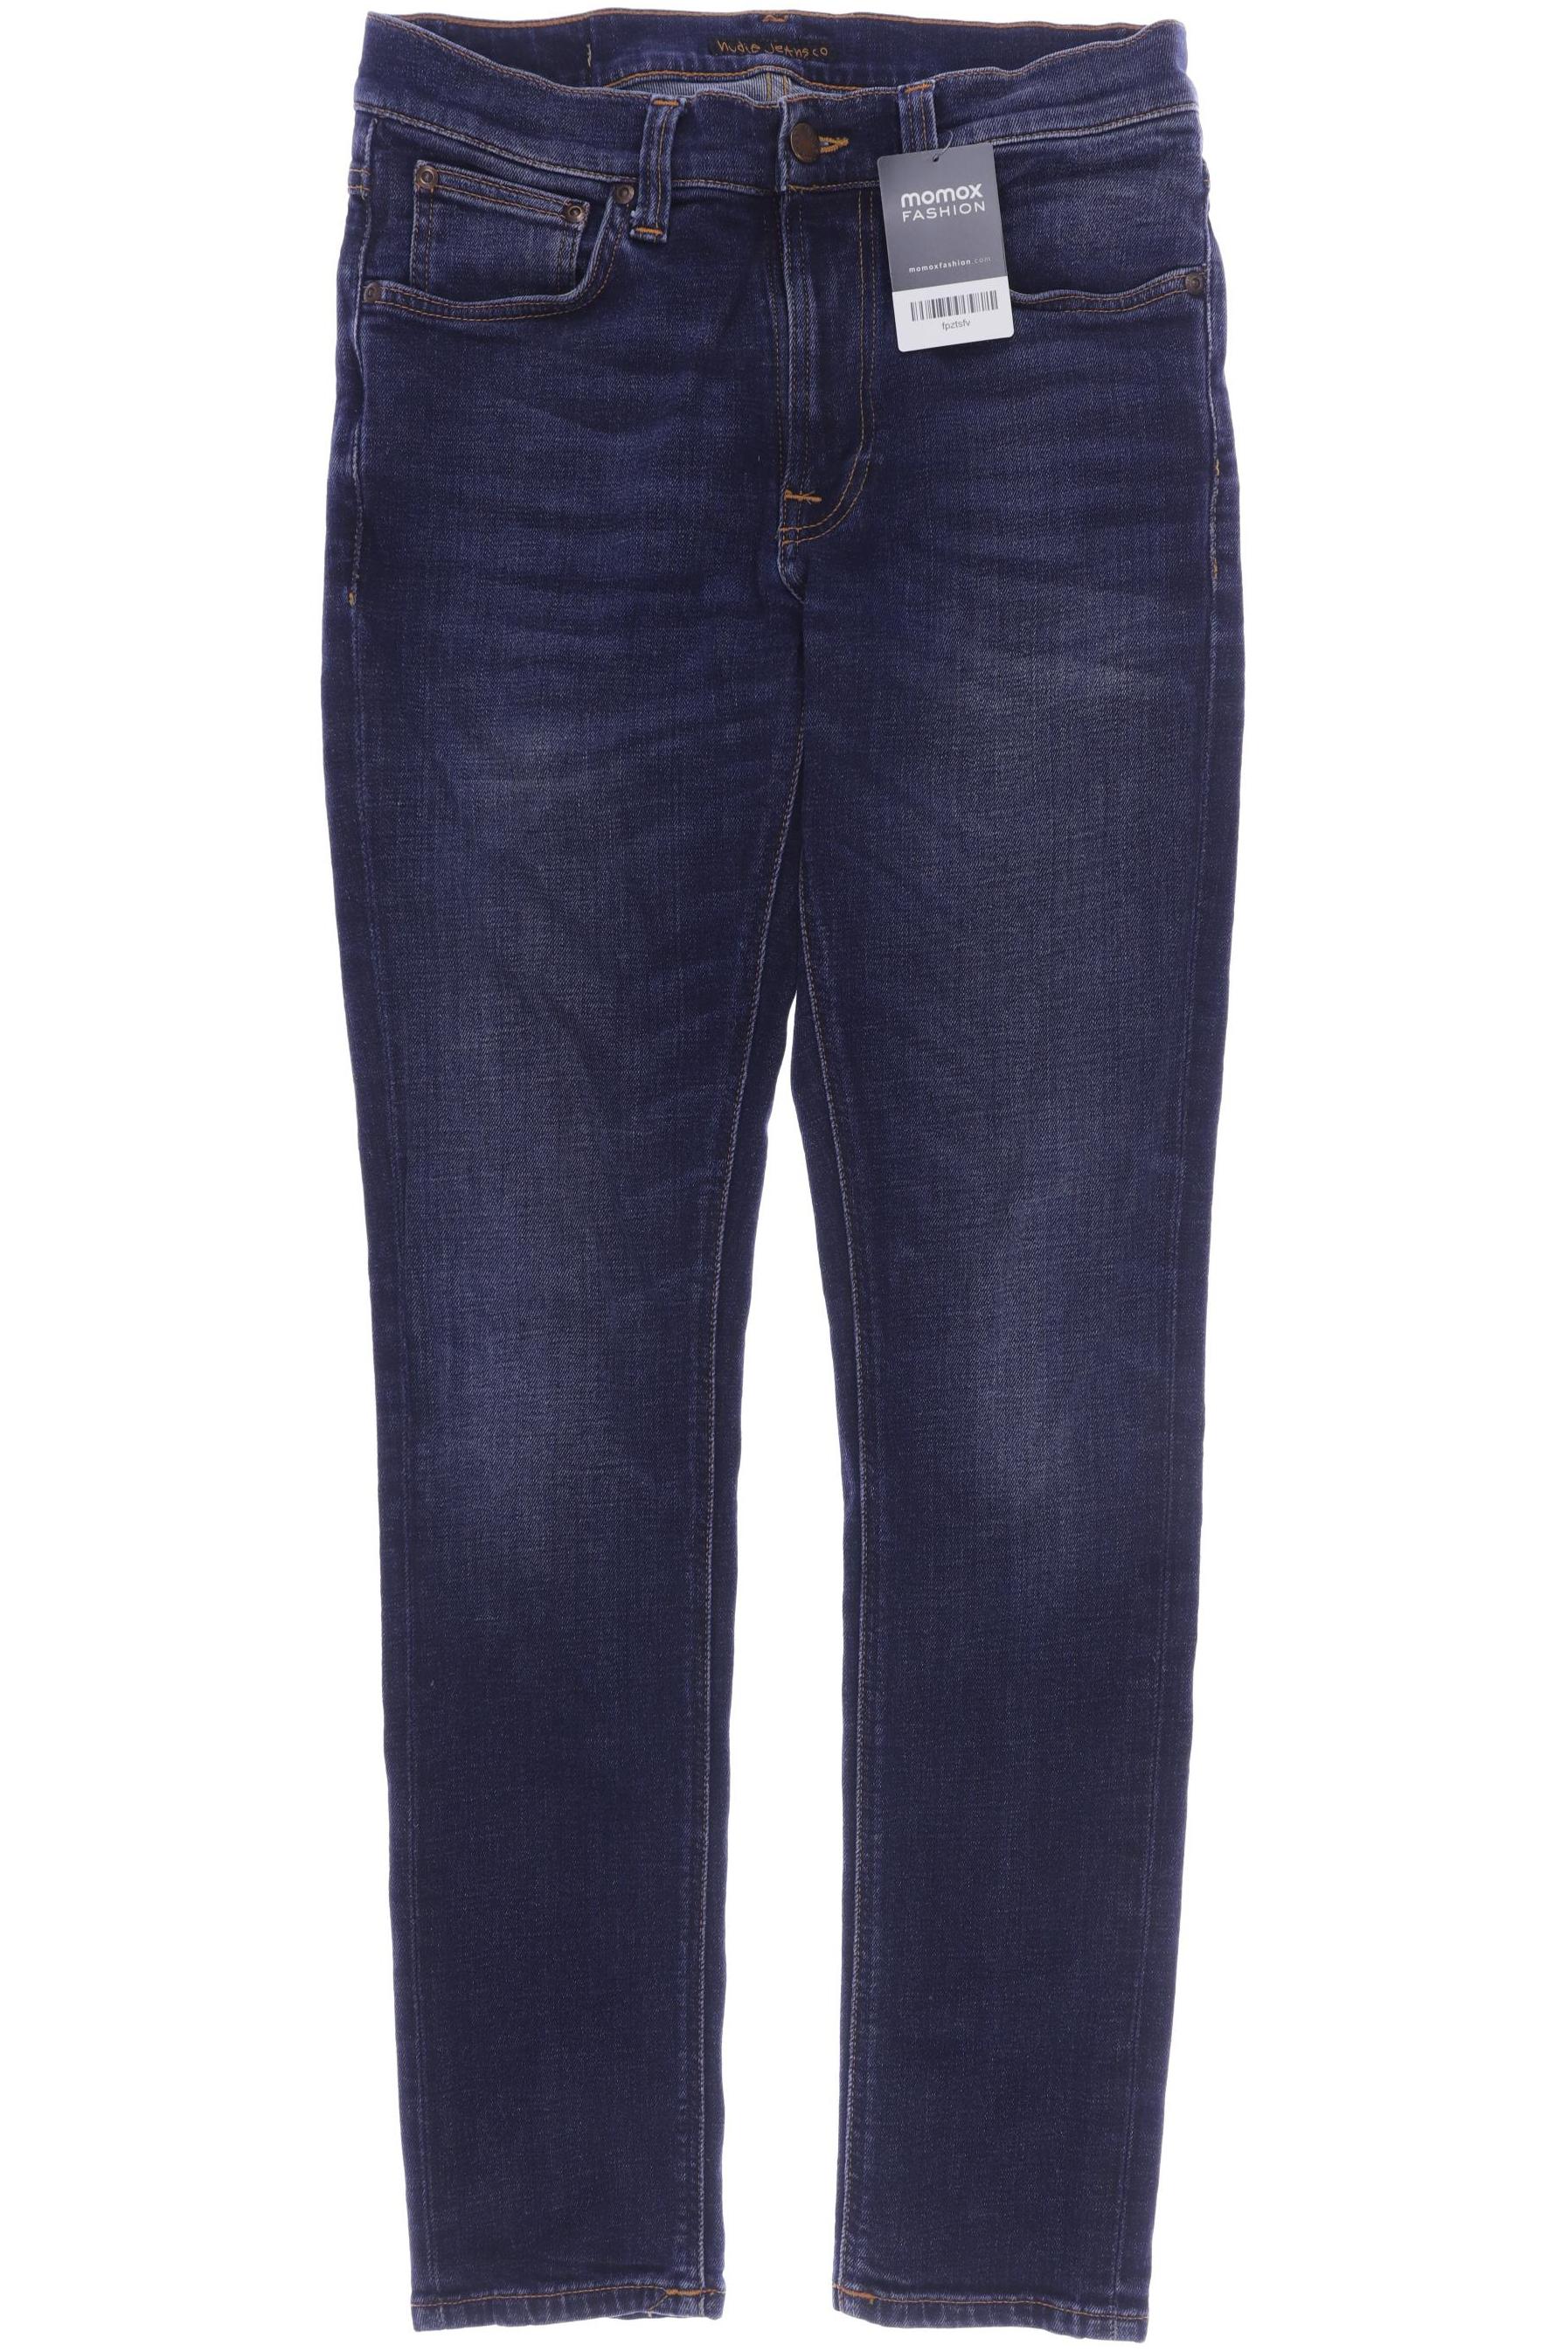 Nudie Jeans Herren Jeans, marineblau von Nudie Jeans